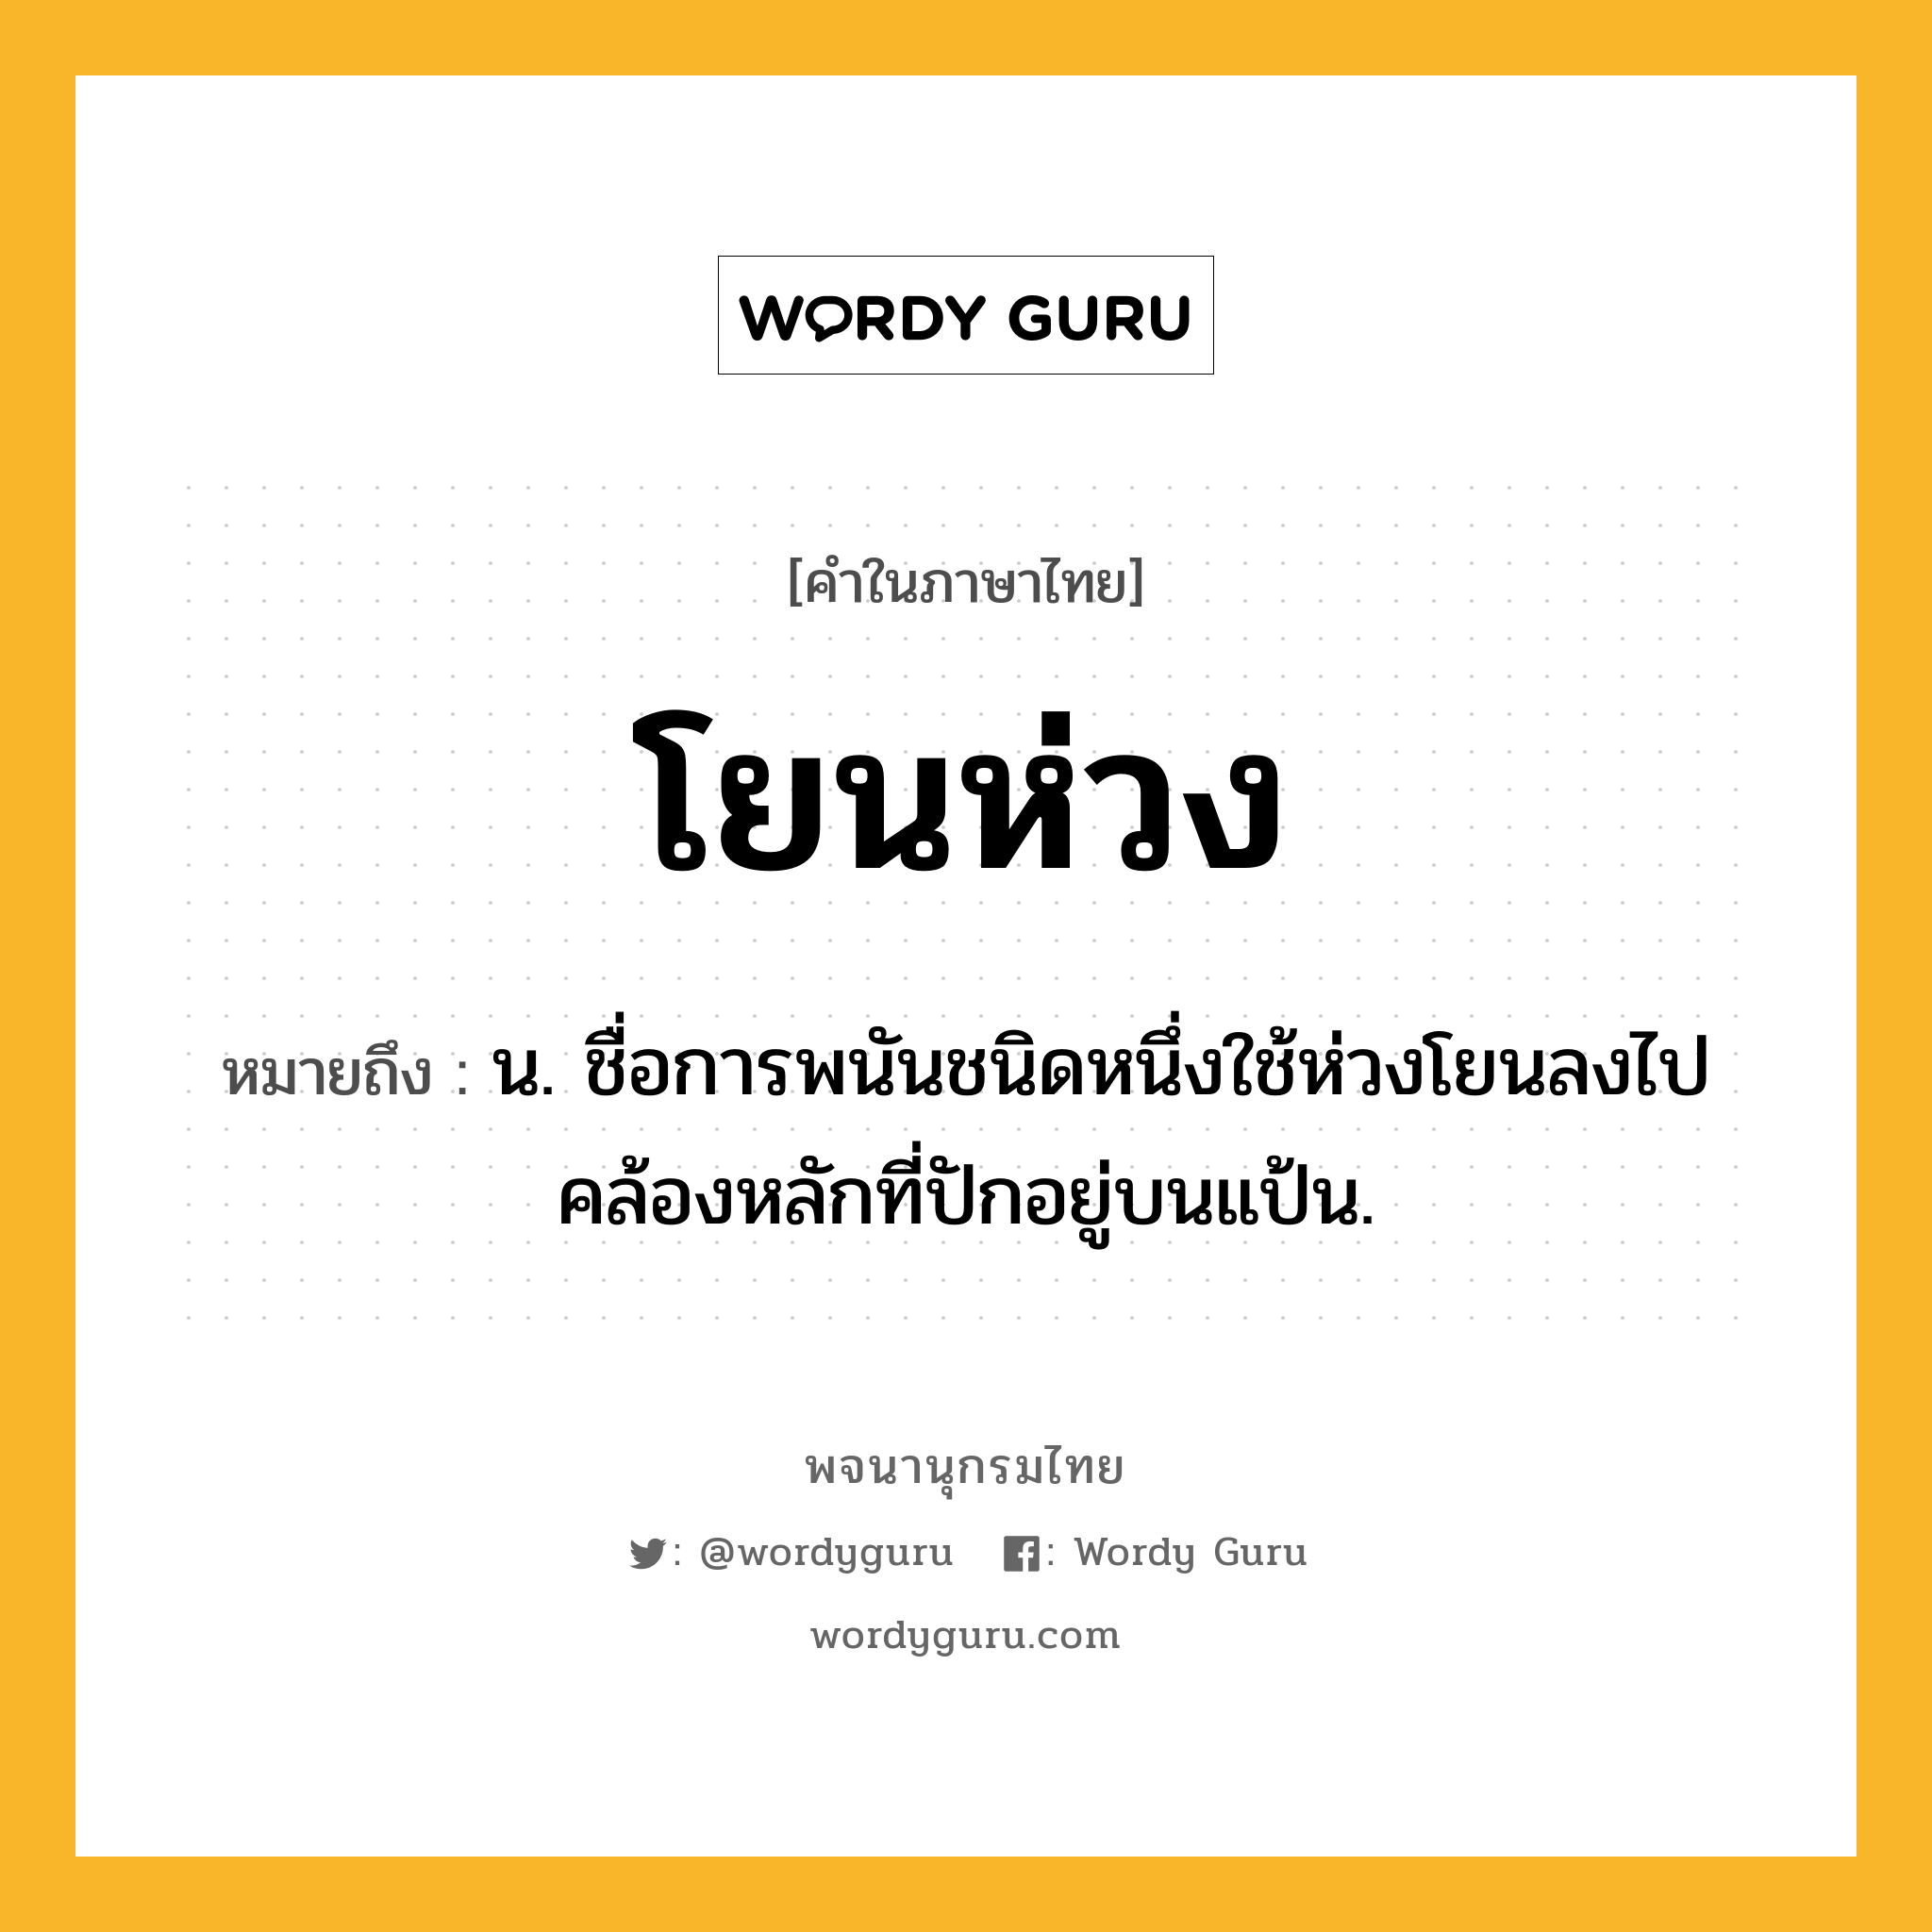 โยนห่วง หมายถึงอะไร?, คำในภาษาไทย โยนห่วง หมายถึง น. ชื่อการพนันชนิดหนึ่งใช้ห่วงโยนลงไปคล้องหลักที่ปักอยู่บนแป้น.